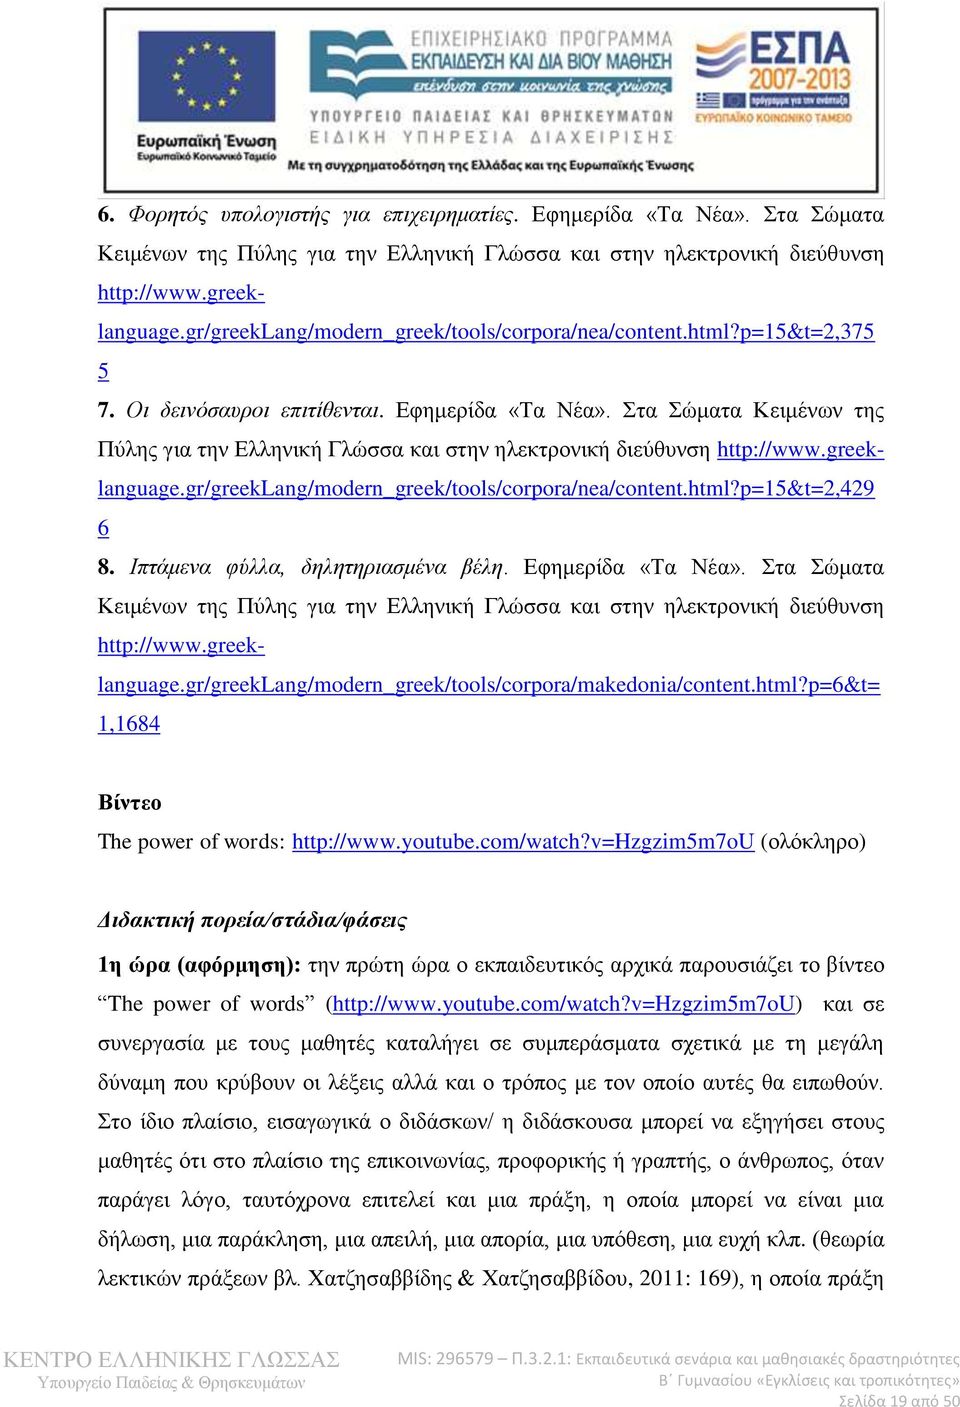 Στα Σώματα Κειμένων της Πύλης για την Ελληνική Γλώσσα και στην ηλεκτρονική διεύθυνση http://www.greeklanguage.gr/greeklang/modern_greek/tools/corpora/nea/content.html?p=15&t=2,429 6 8.